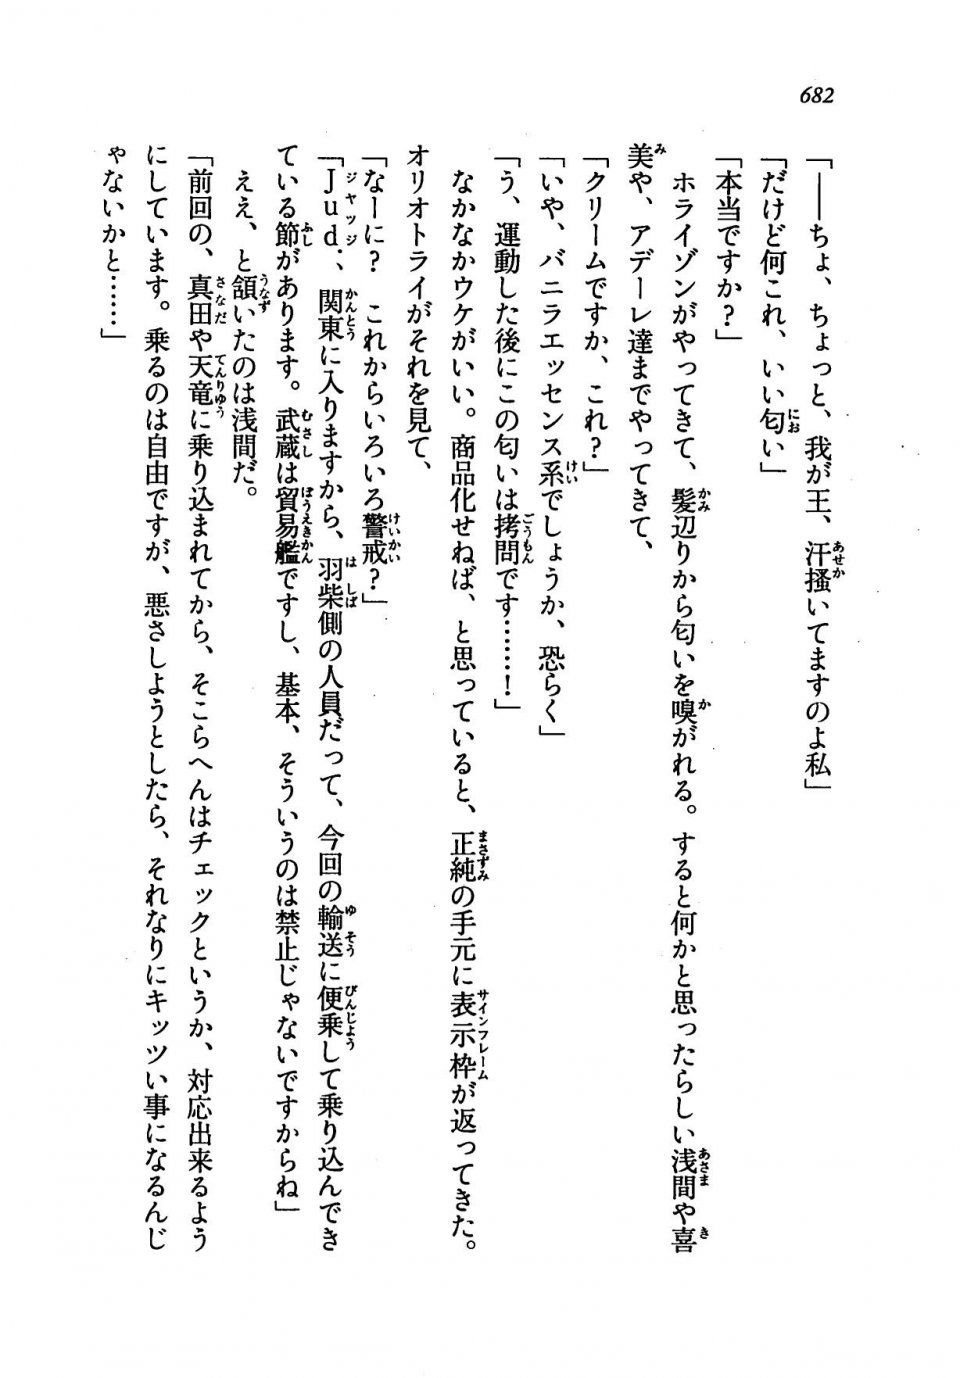 Kyoukai Senjou no Horizon LN Vol 19(8A) - Photo #682